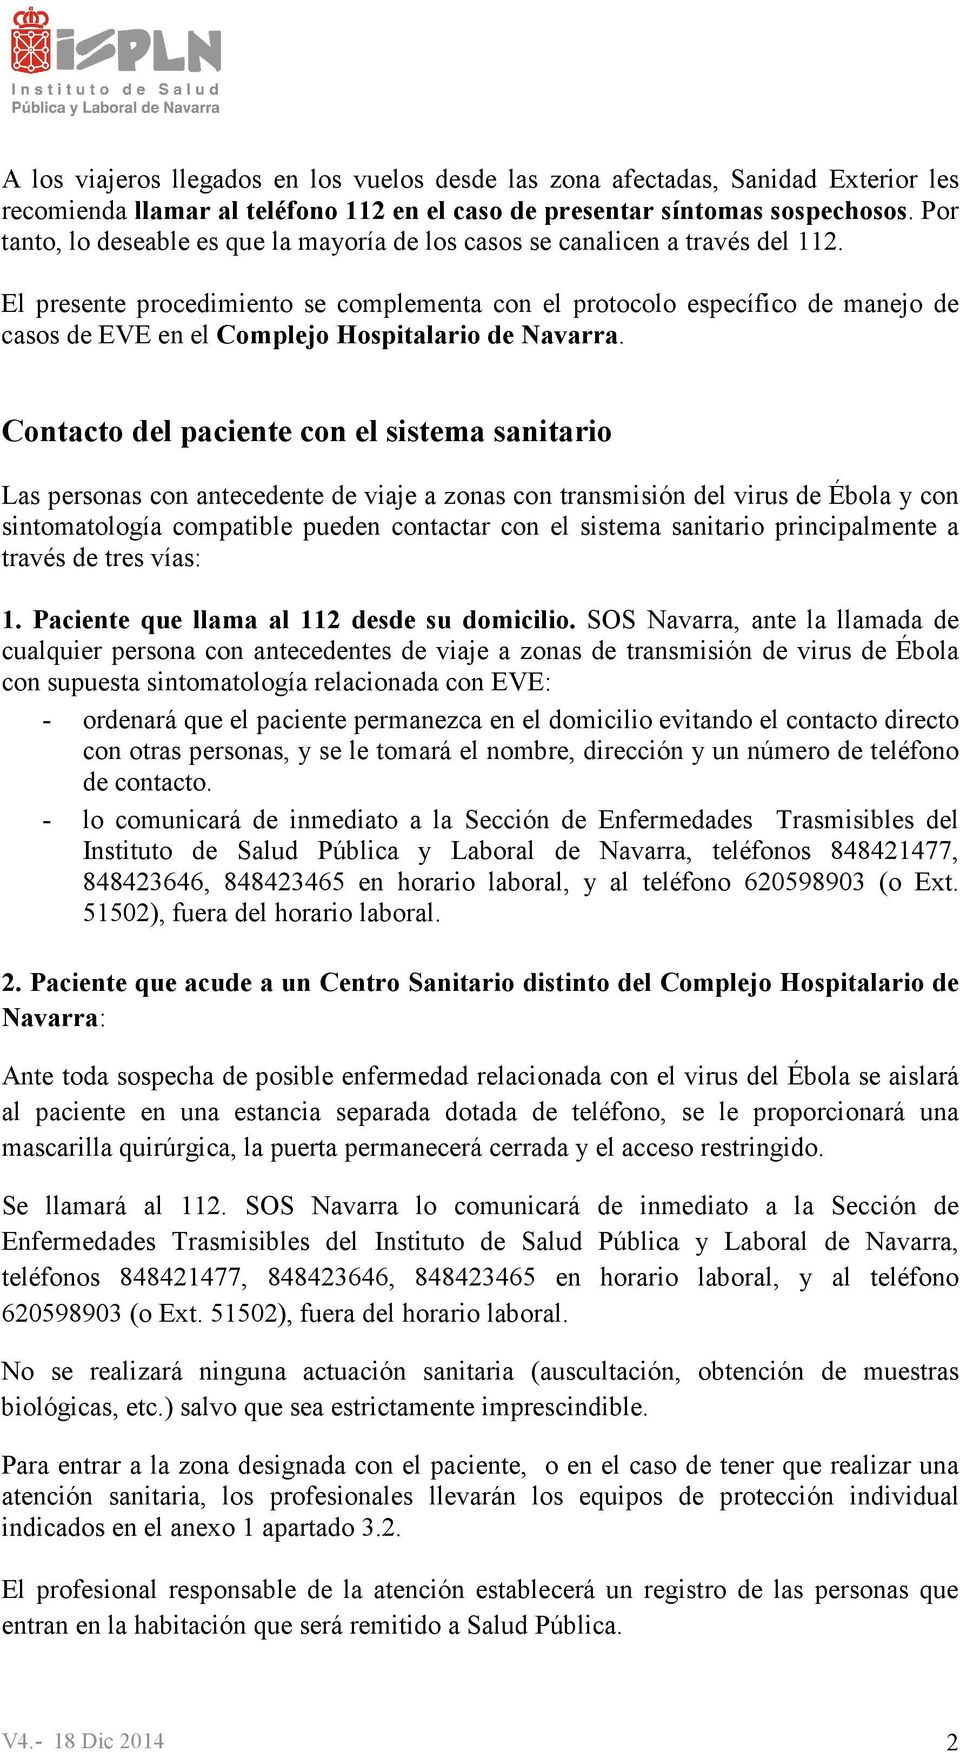 El presente procedimiento se complementa con el protocolo específico de manejo de casos de EVE en el Complejo Hospitalario de Navarra.